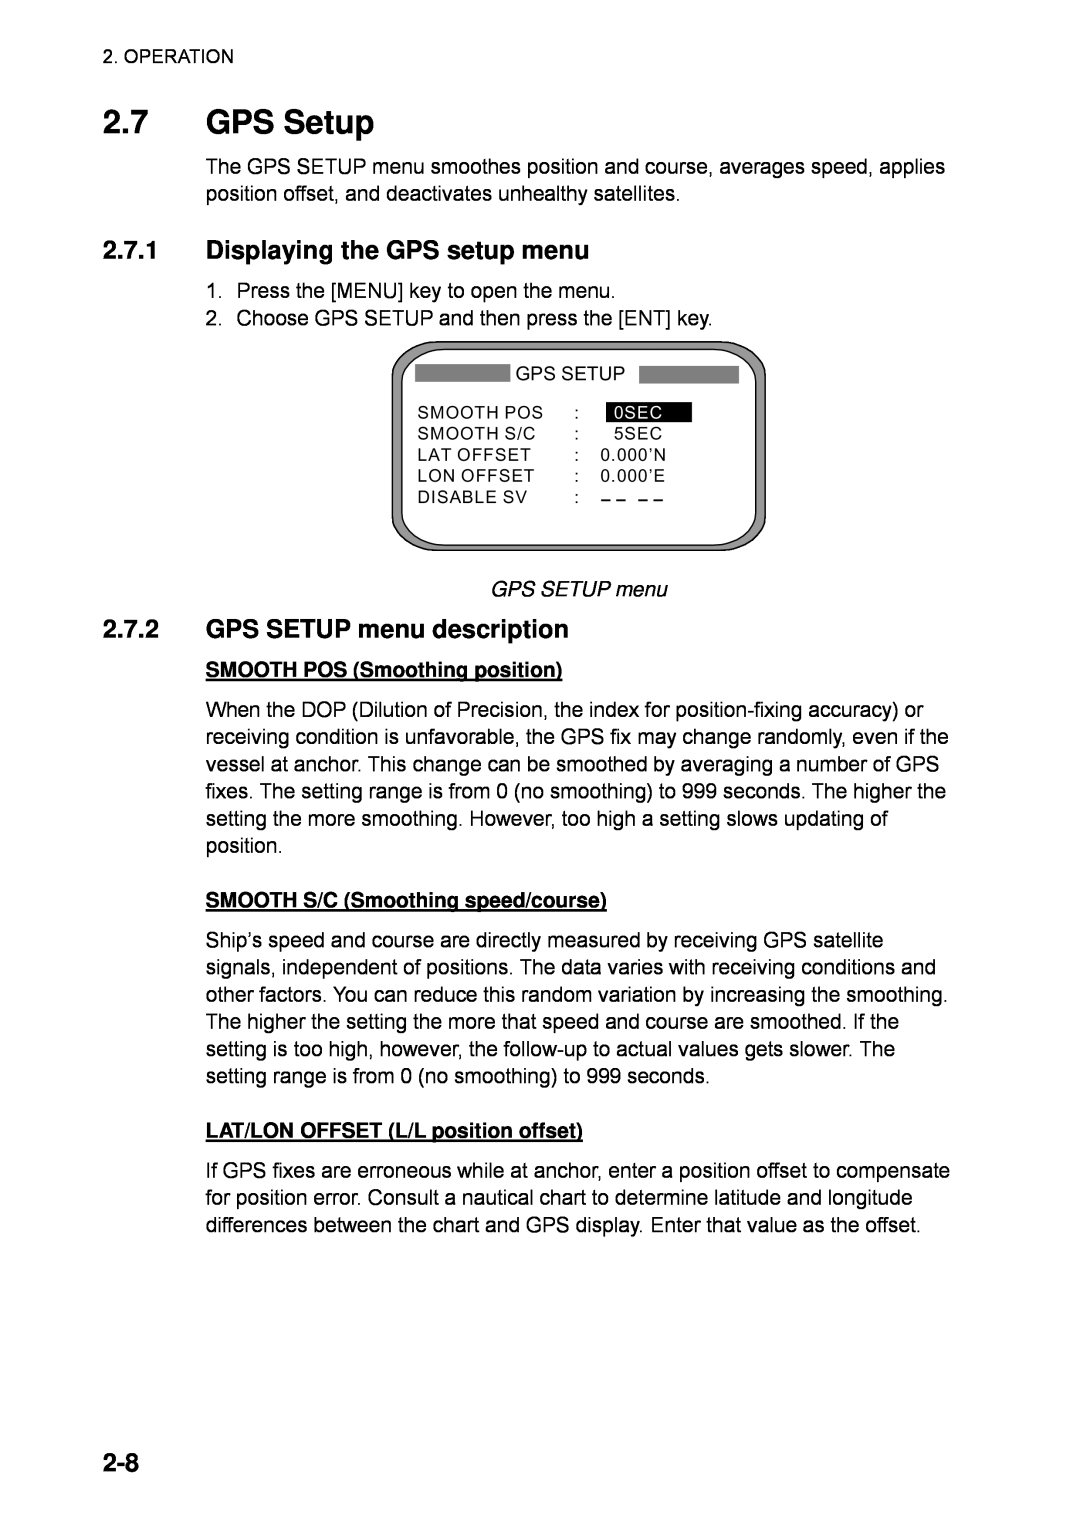 Furuno SC-110 manual 2.7GPS Setup, 2.7.1Displaying the GPS setup menu, 2.7.2GPS SETUP menu description 